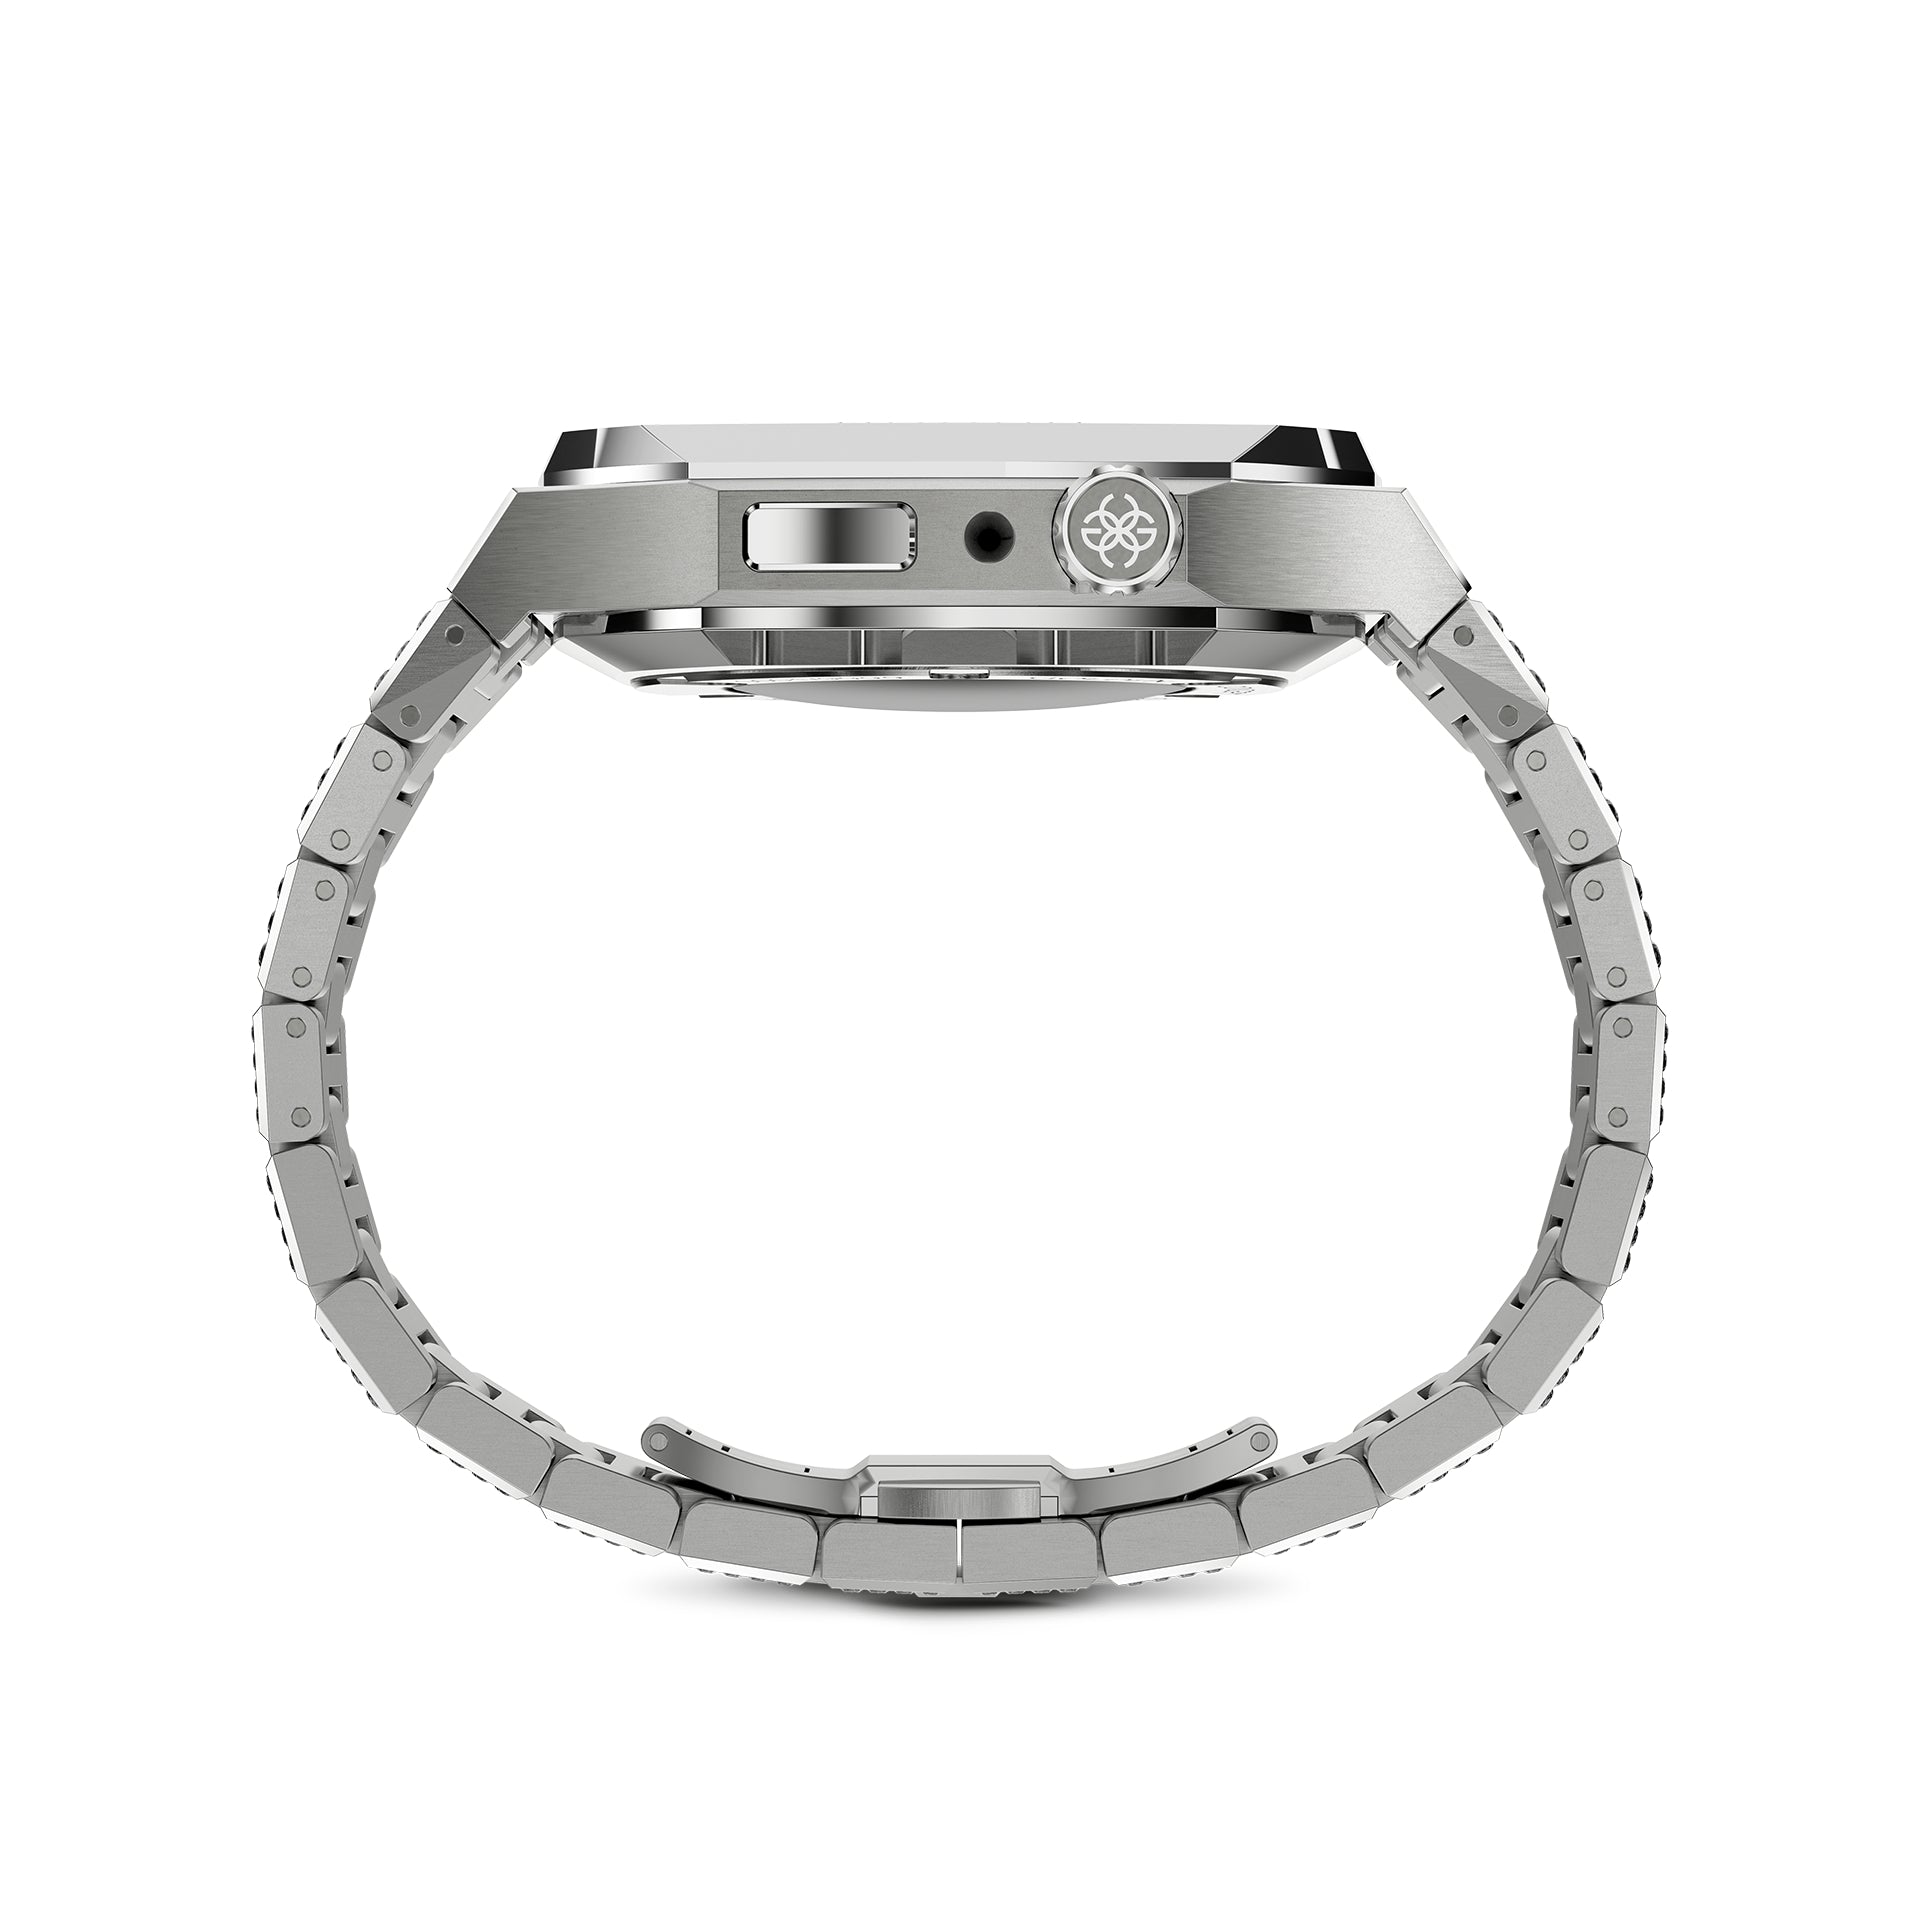 Apple Watch 7 - 9 Case - EVDI - Silver (Silver Steel)